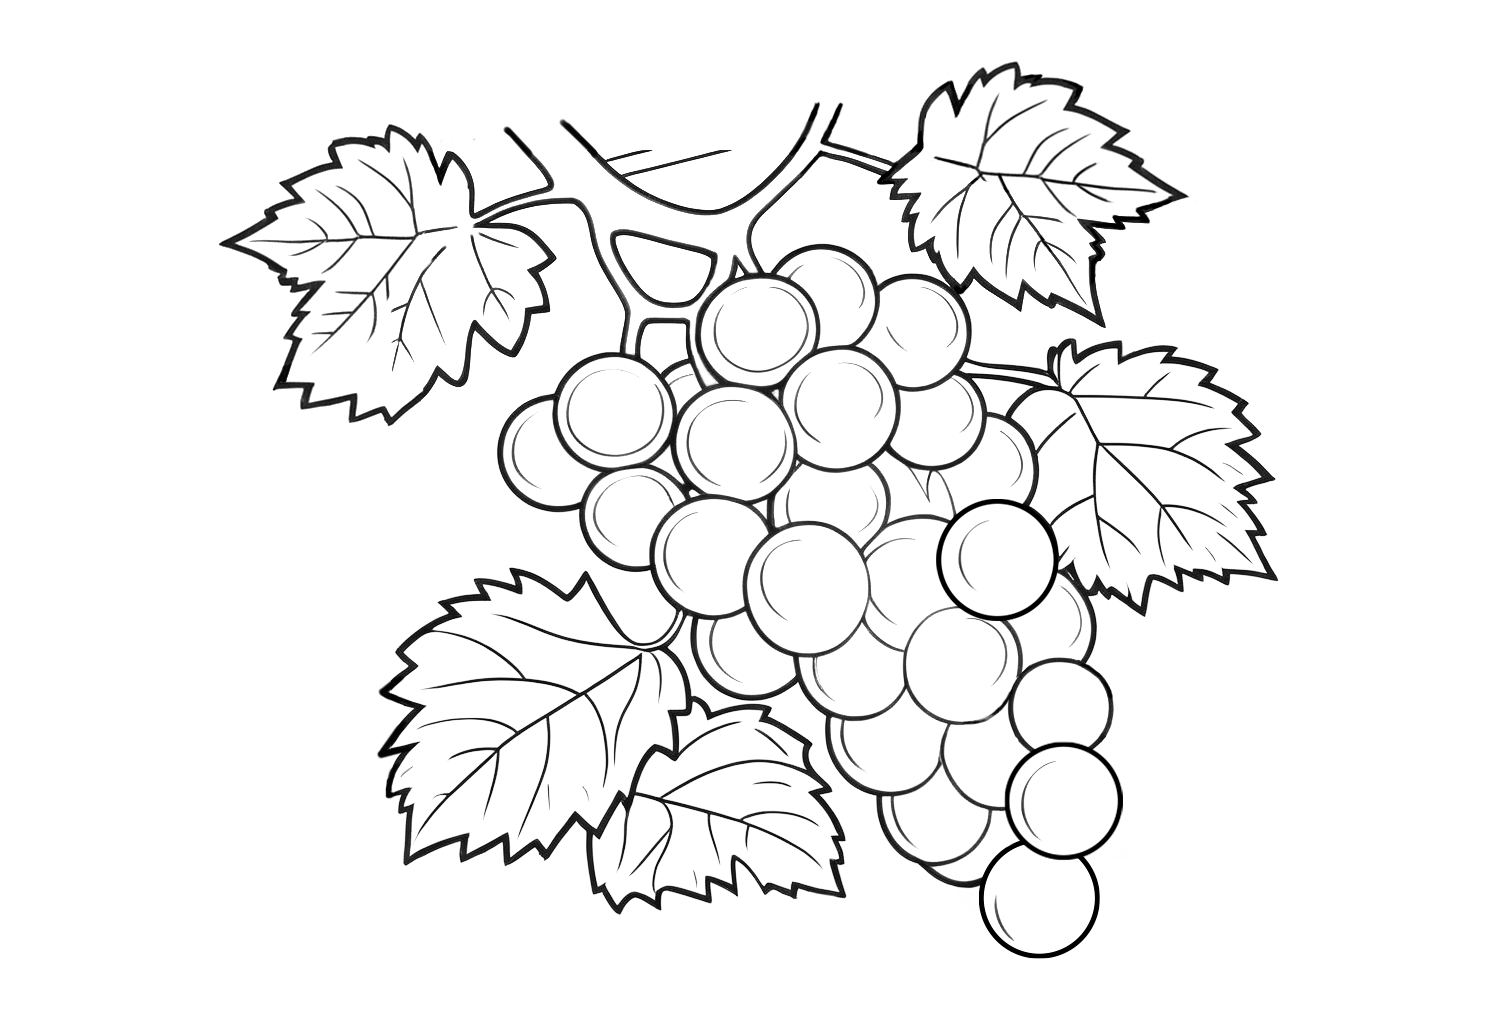 Dibujo de un racimo de uvas para colorear